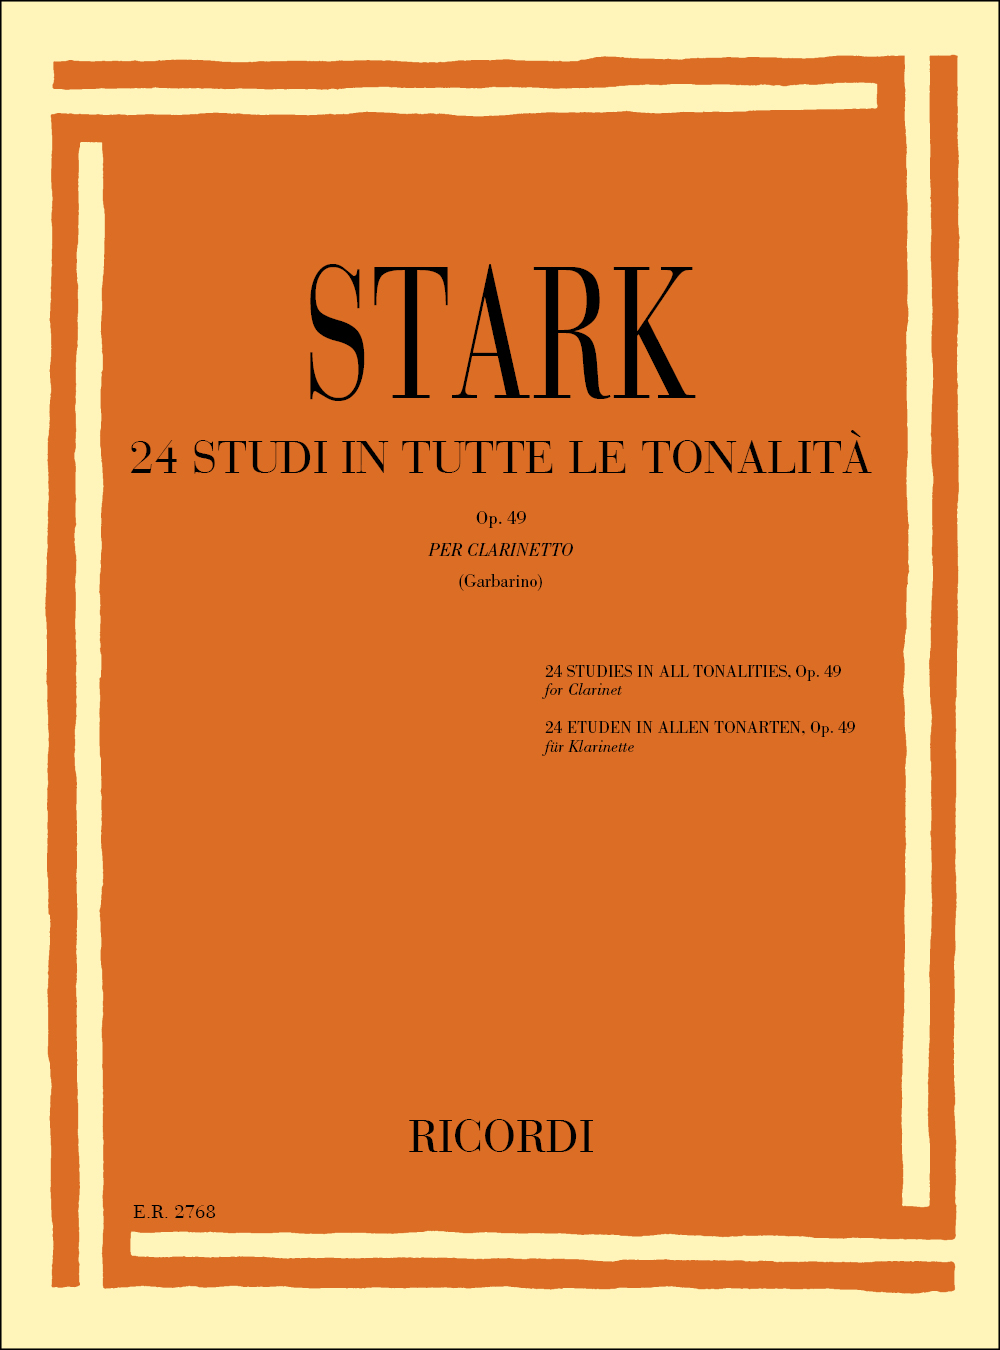 Robert Stark: 24 Studi in tutte le tonalità Op. 49: Clarinet